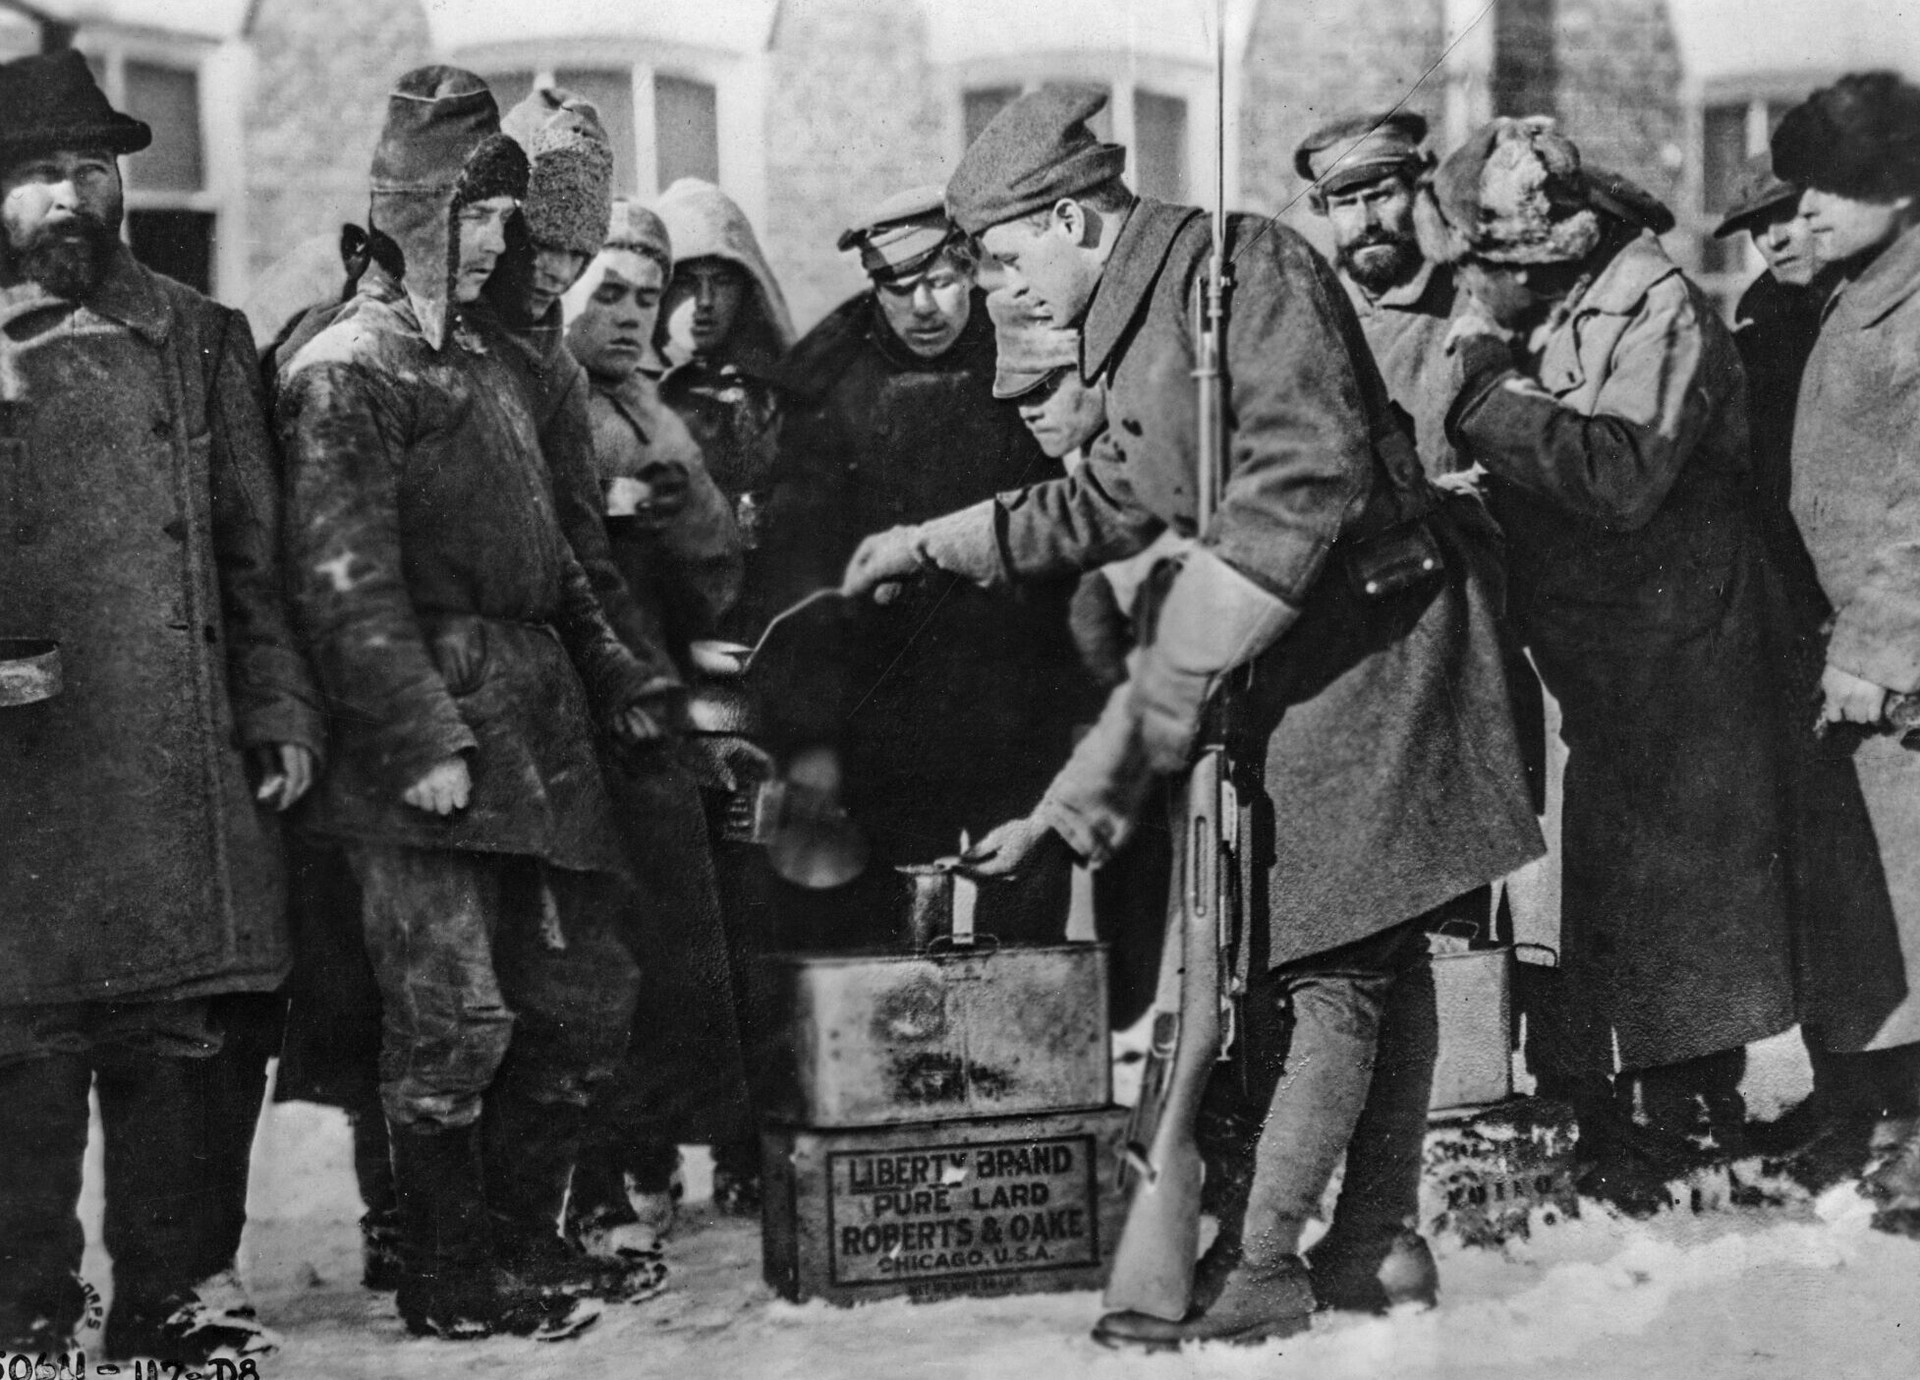 Un soldato americano distribuisce del riso a dei prigionieri di guerra bolscevichi, gennaio 1919